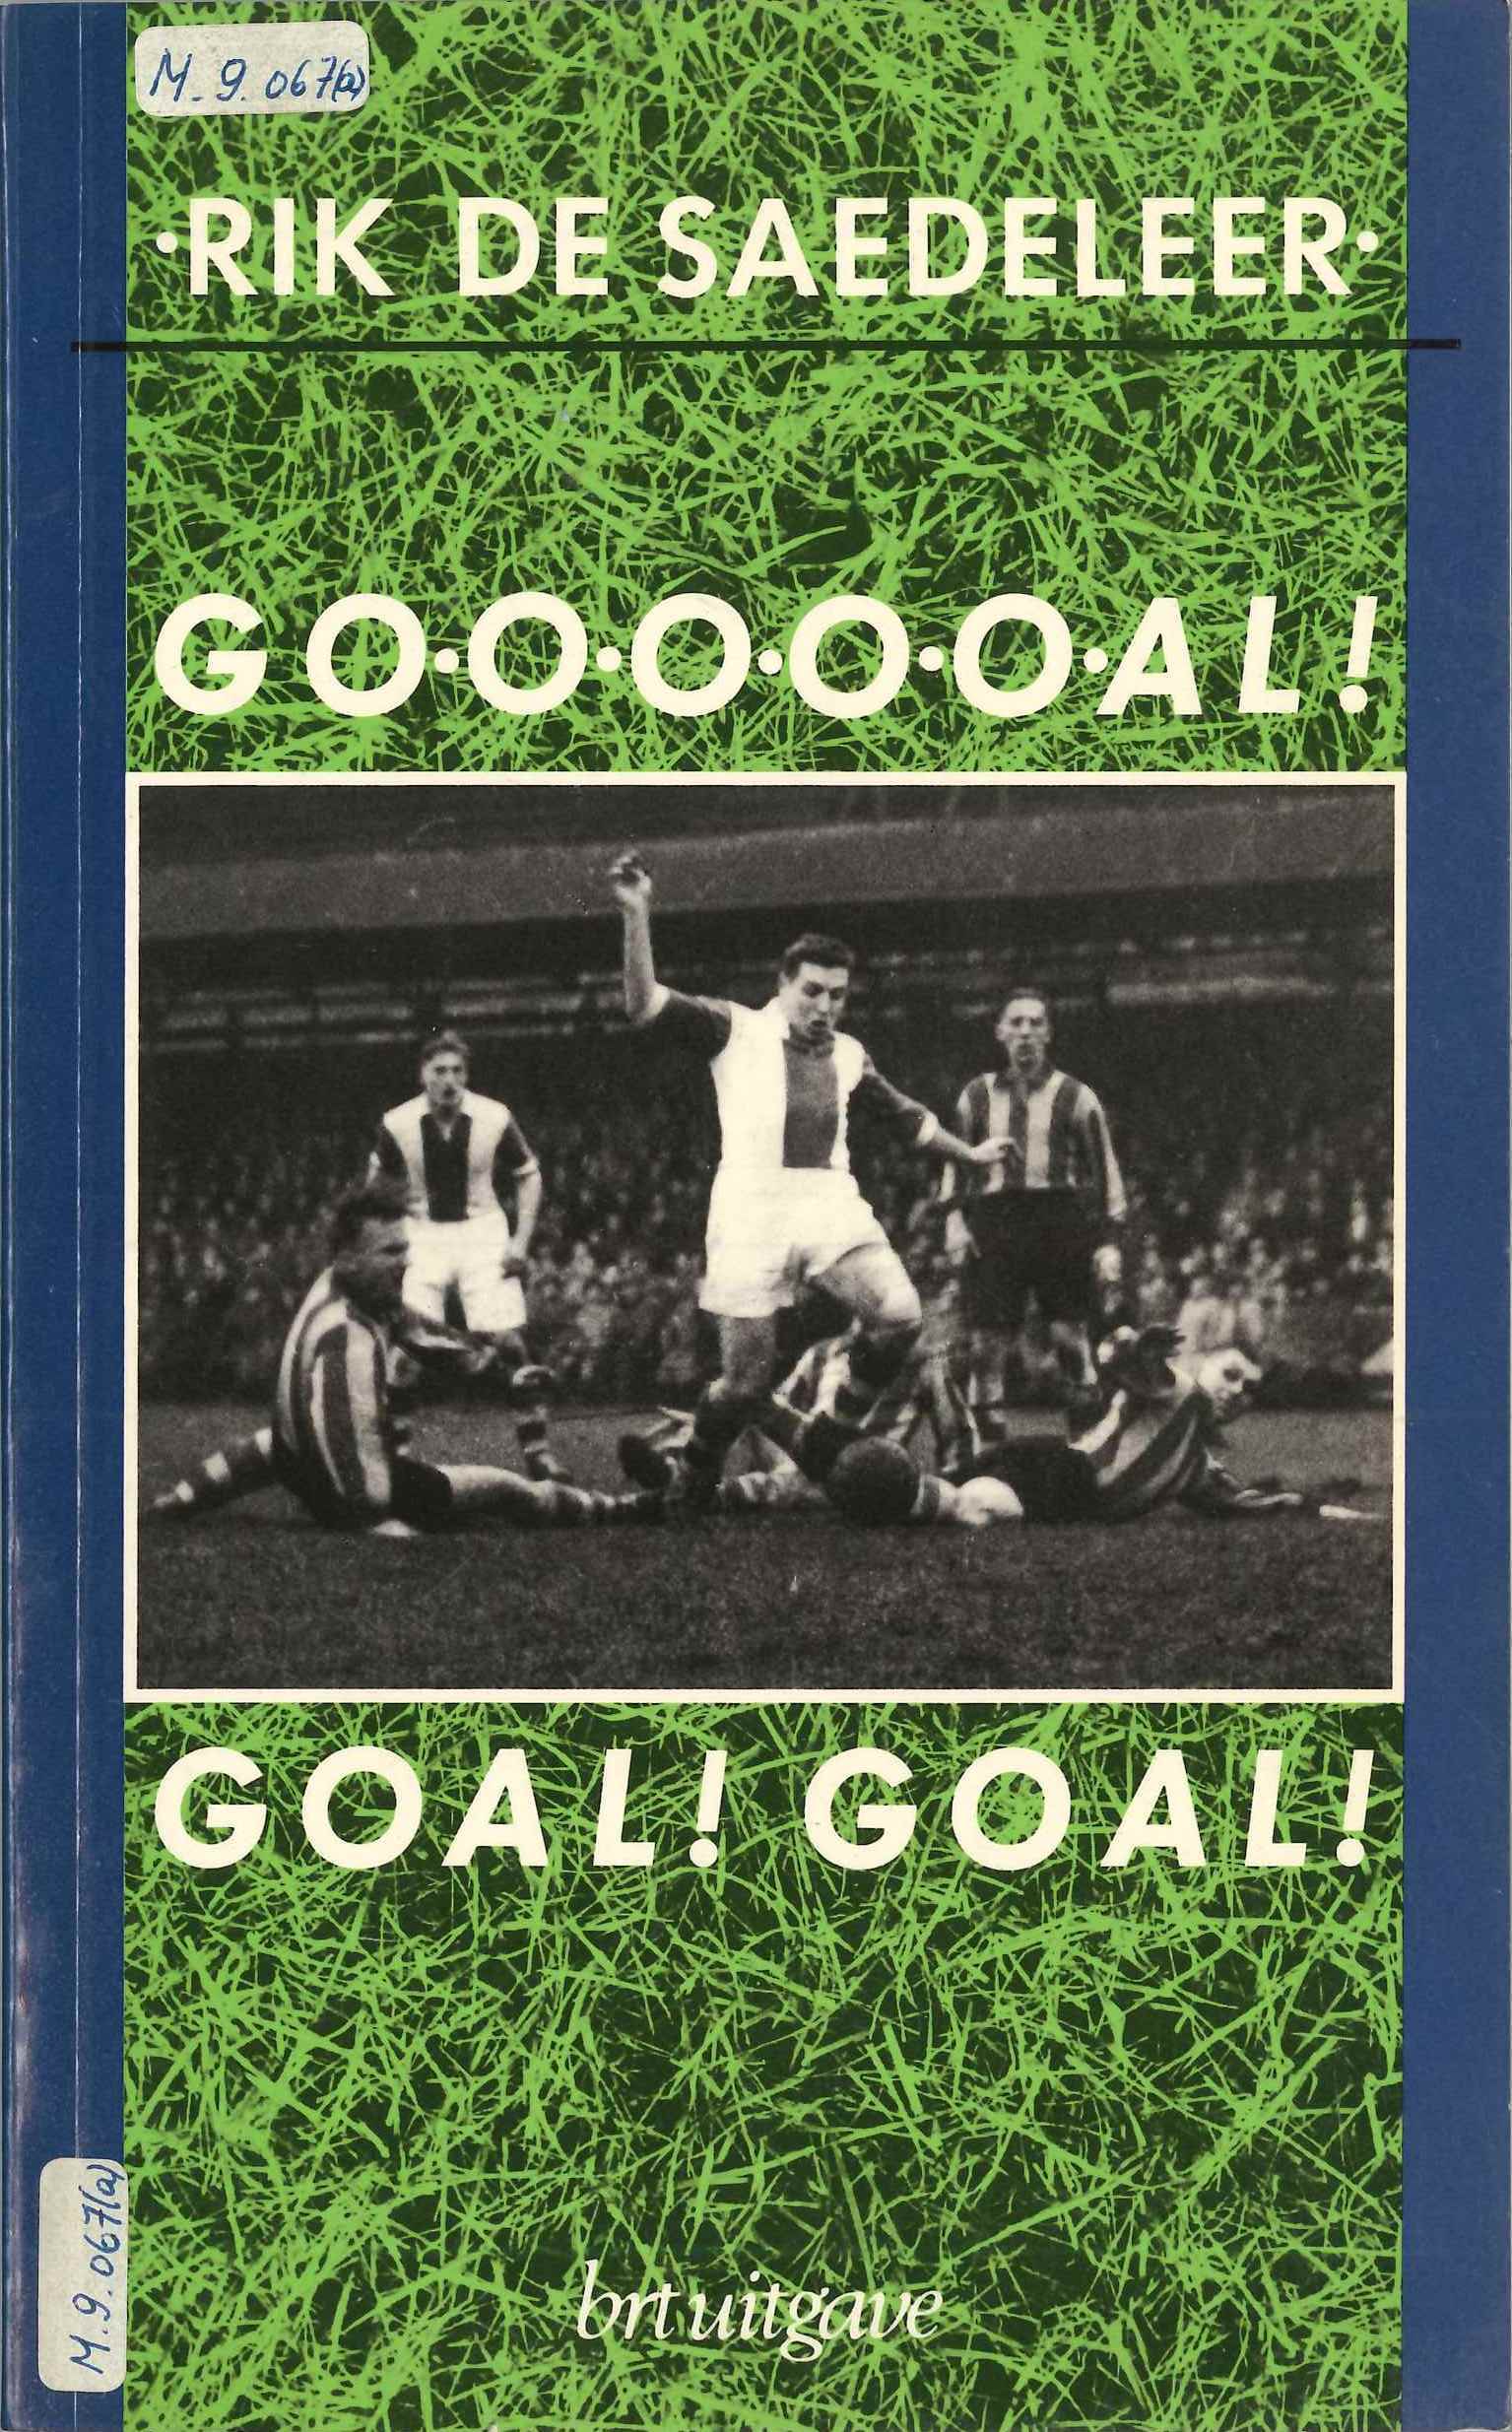 Kaft het boek Goooooal! Goal! Goal! van Rik De Saedeleer